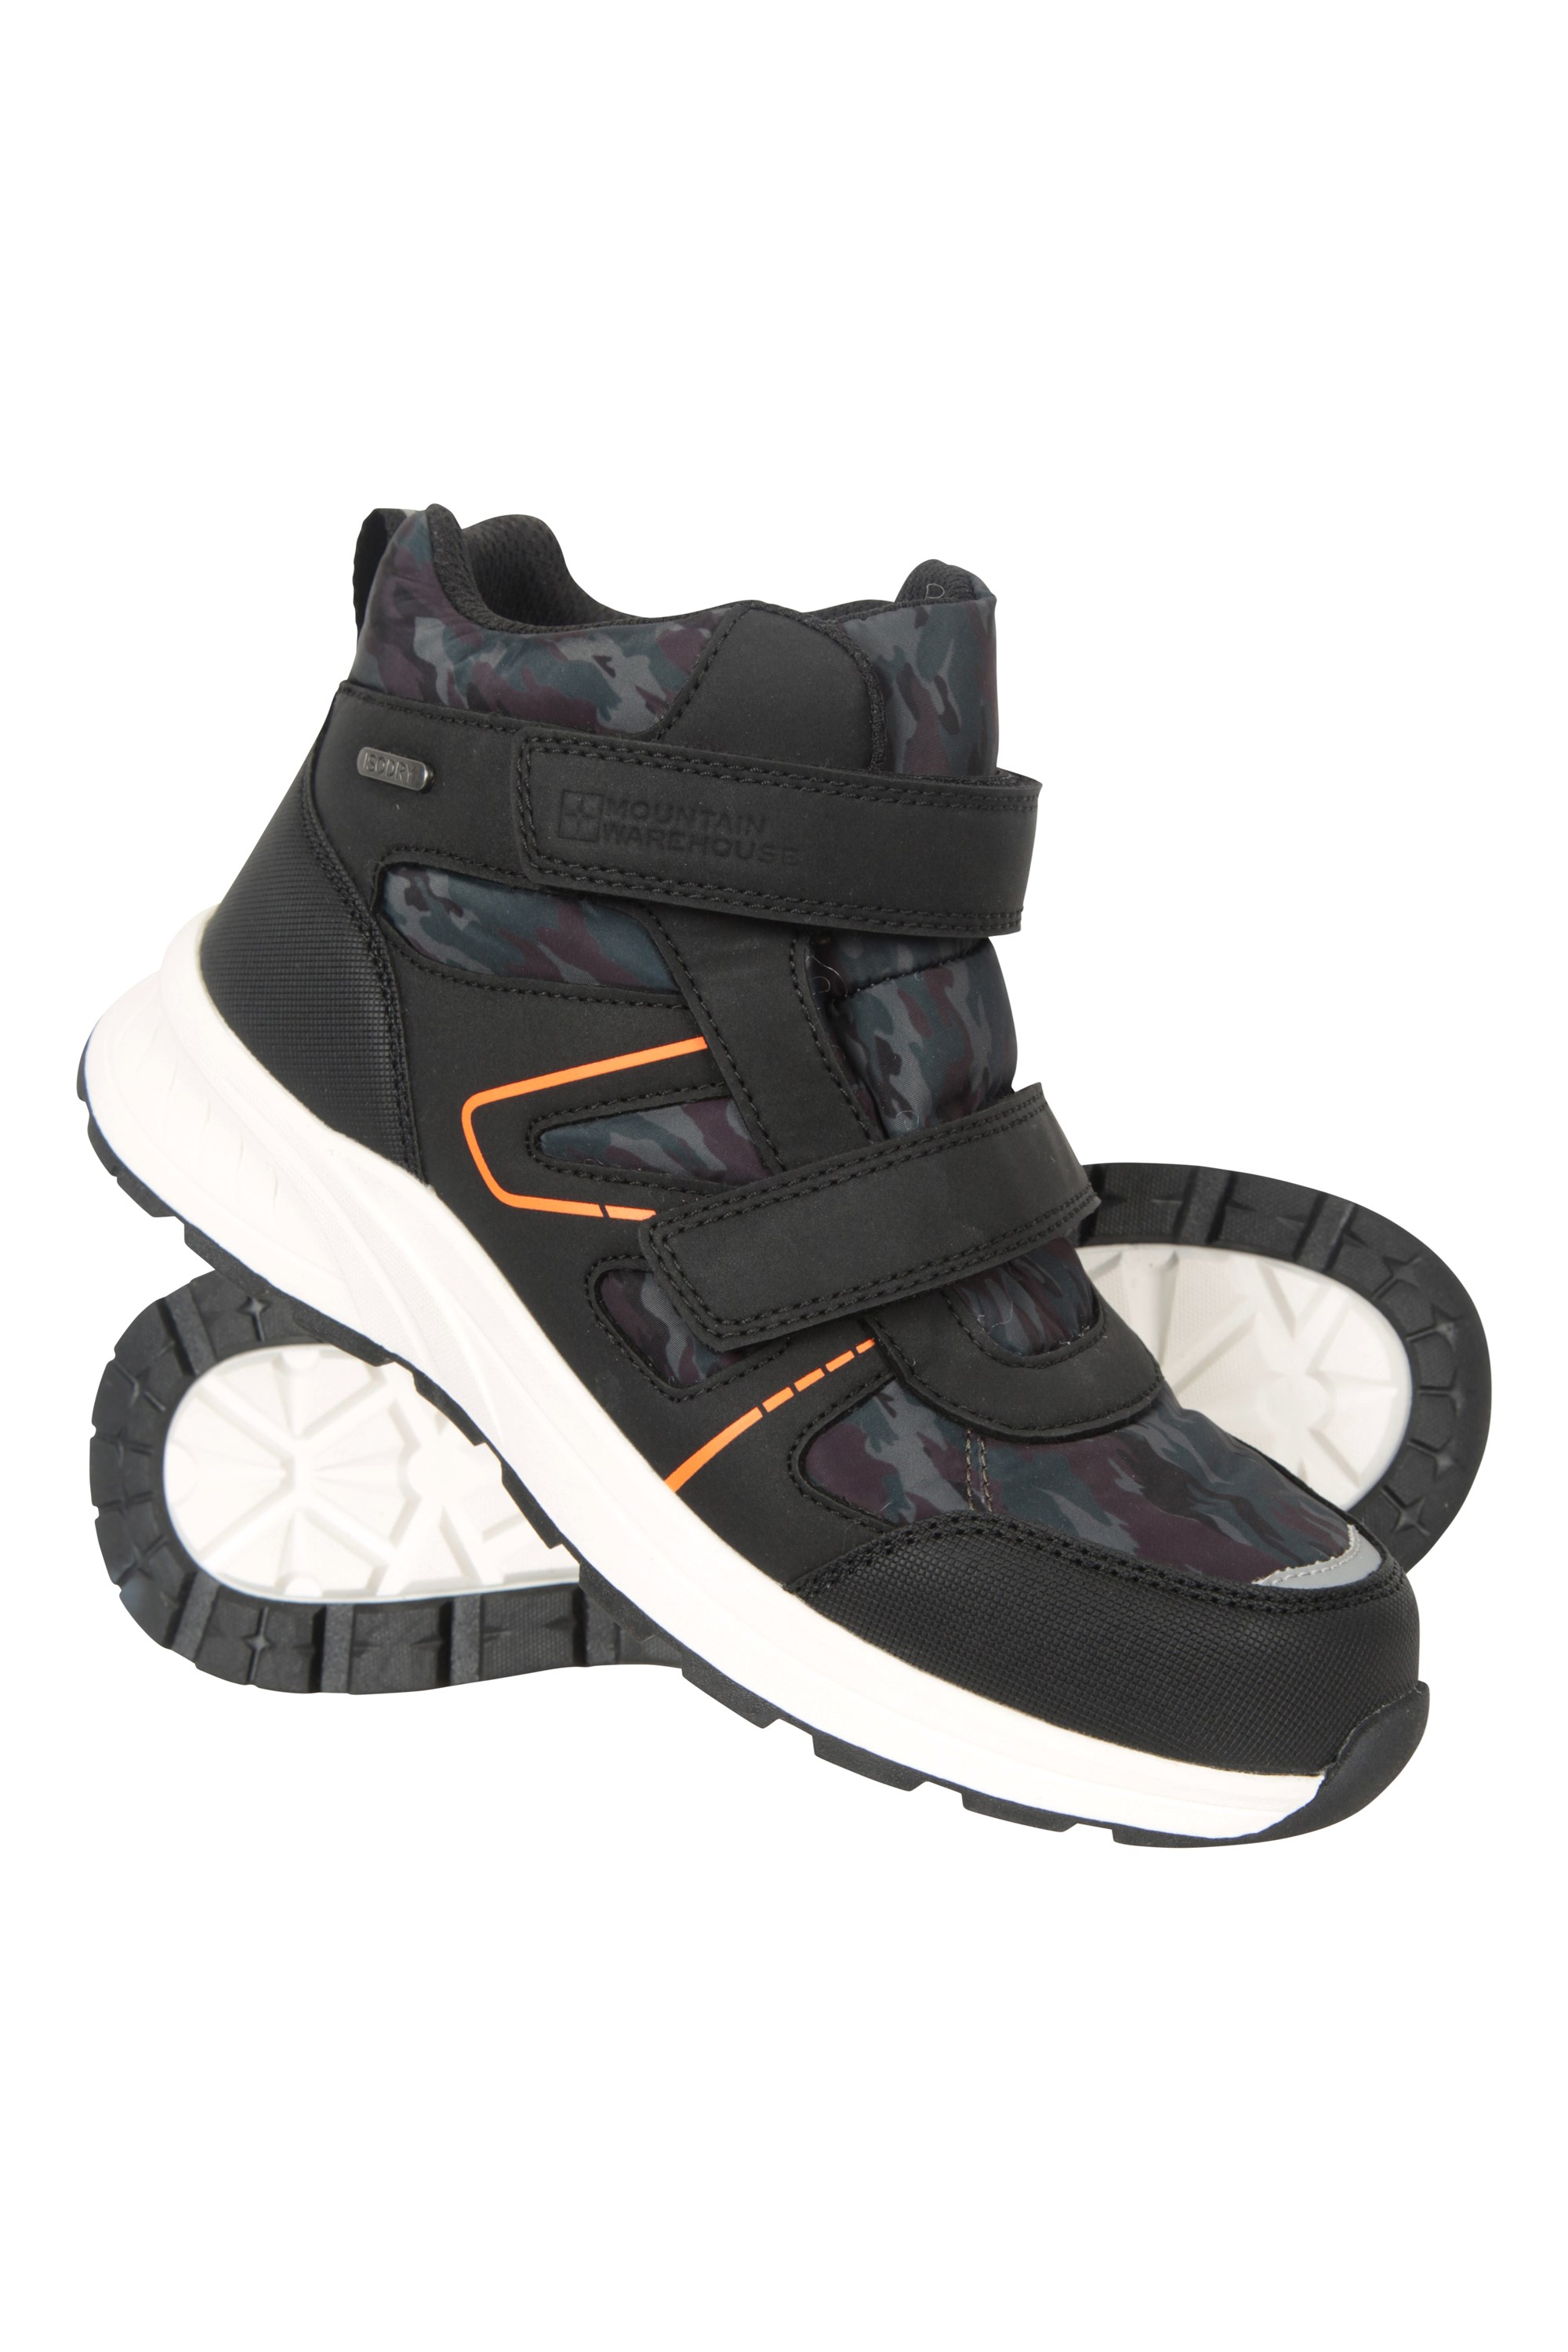 Jupiter Kids Adaptive Waterproof Hiking Boots